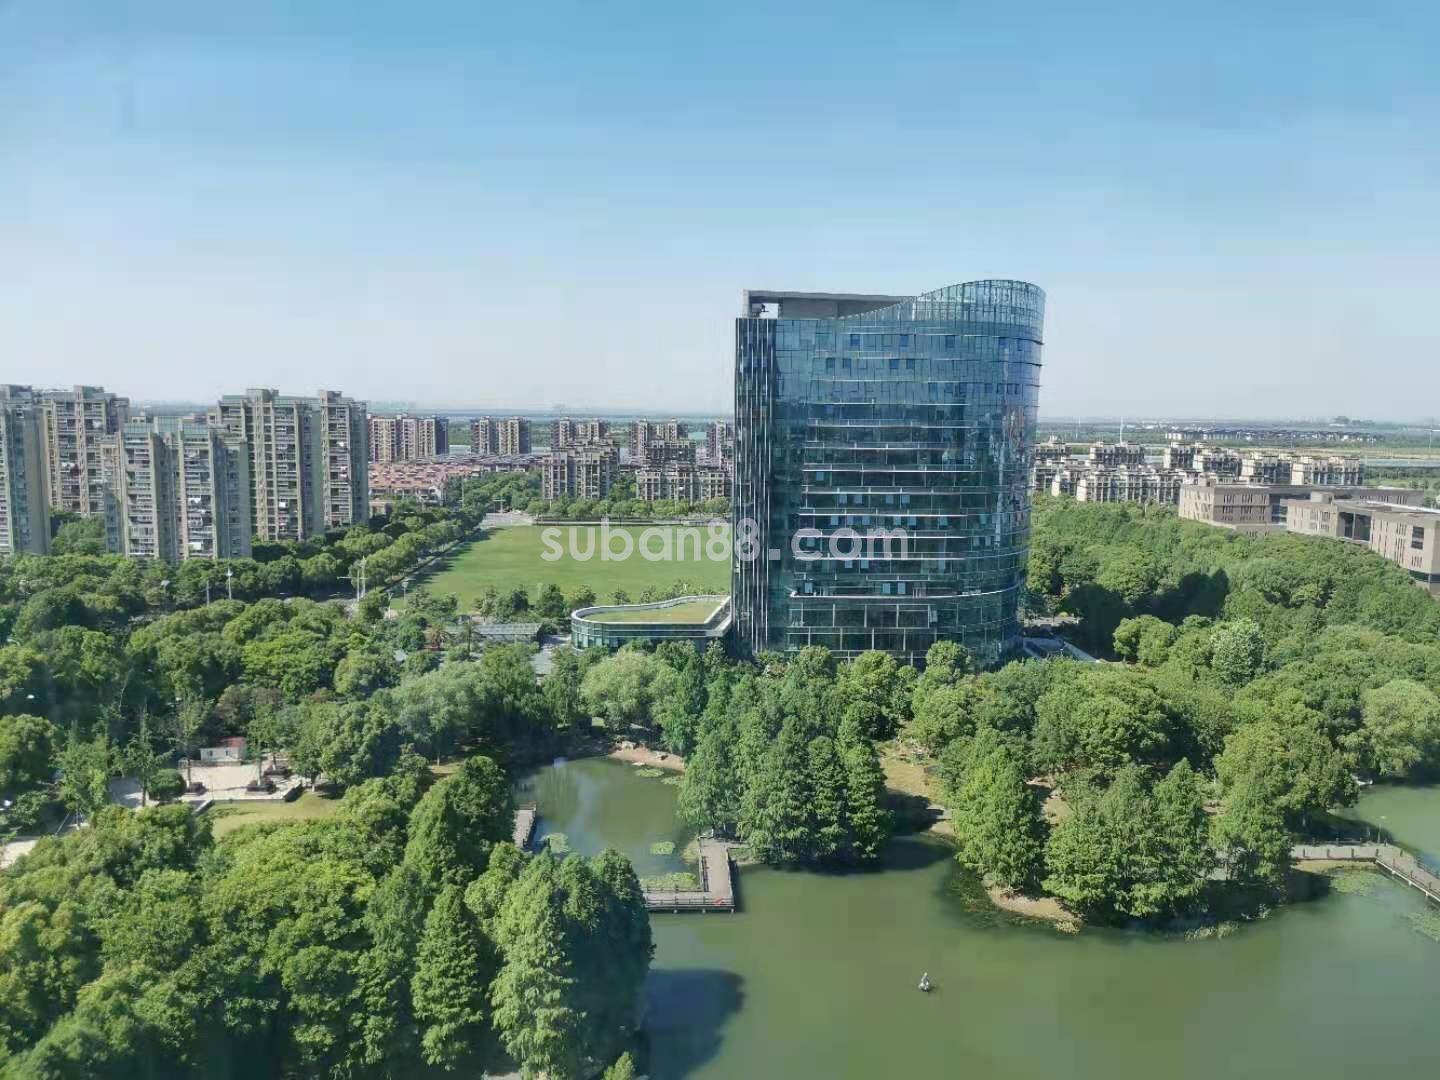  中新生态科技大厦 